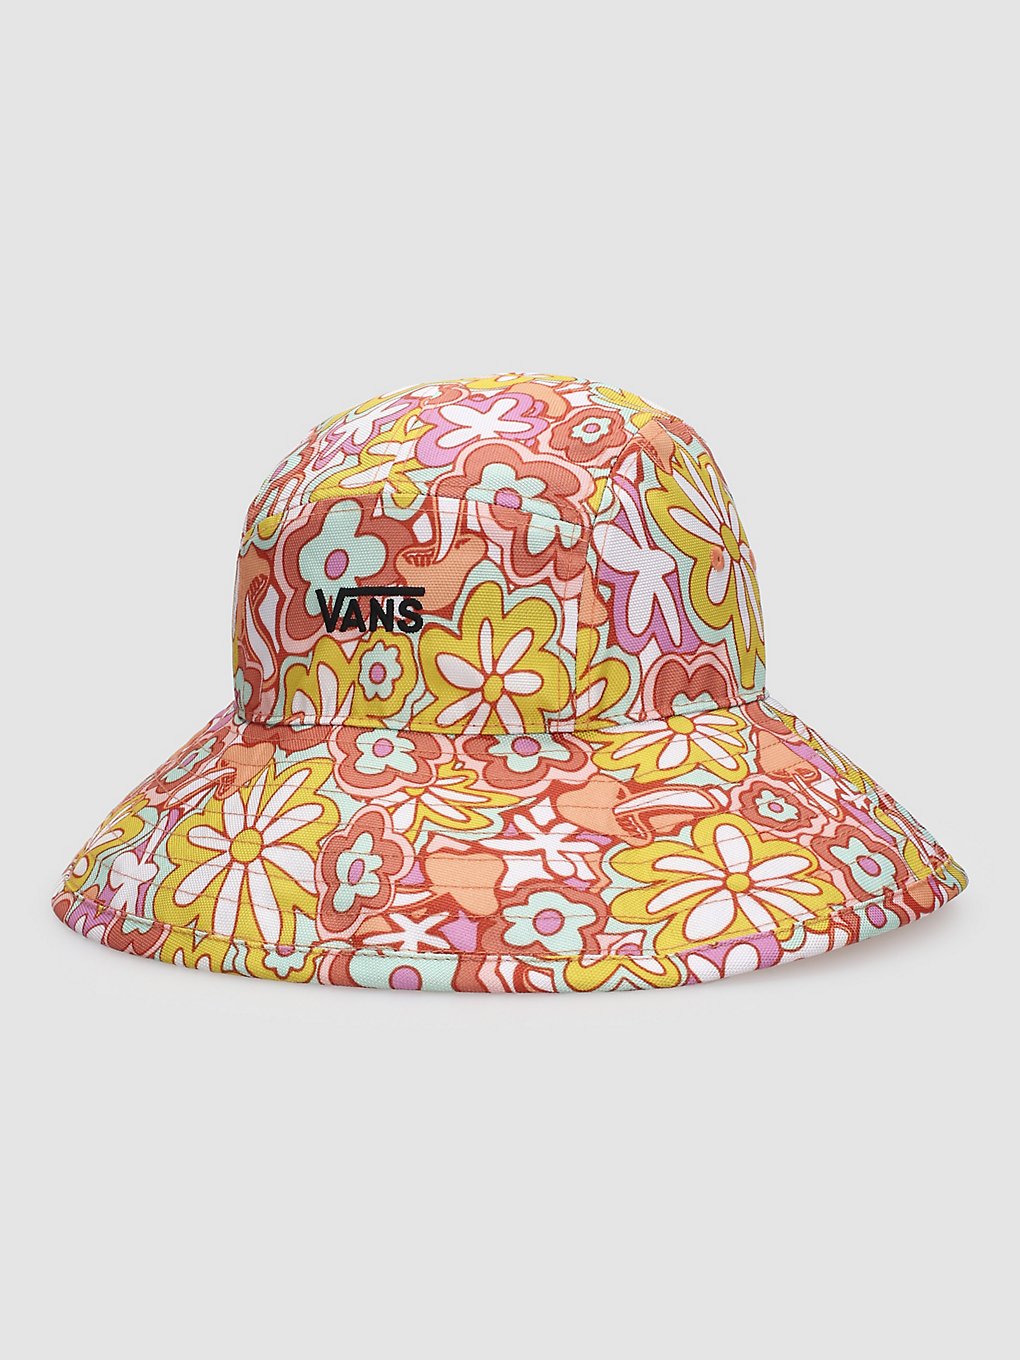 Vans Sunbreaker Bucket Hat sun baked